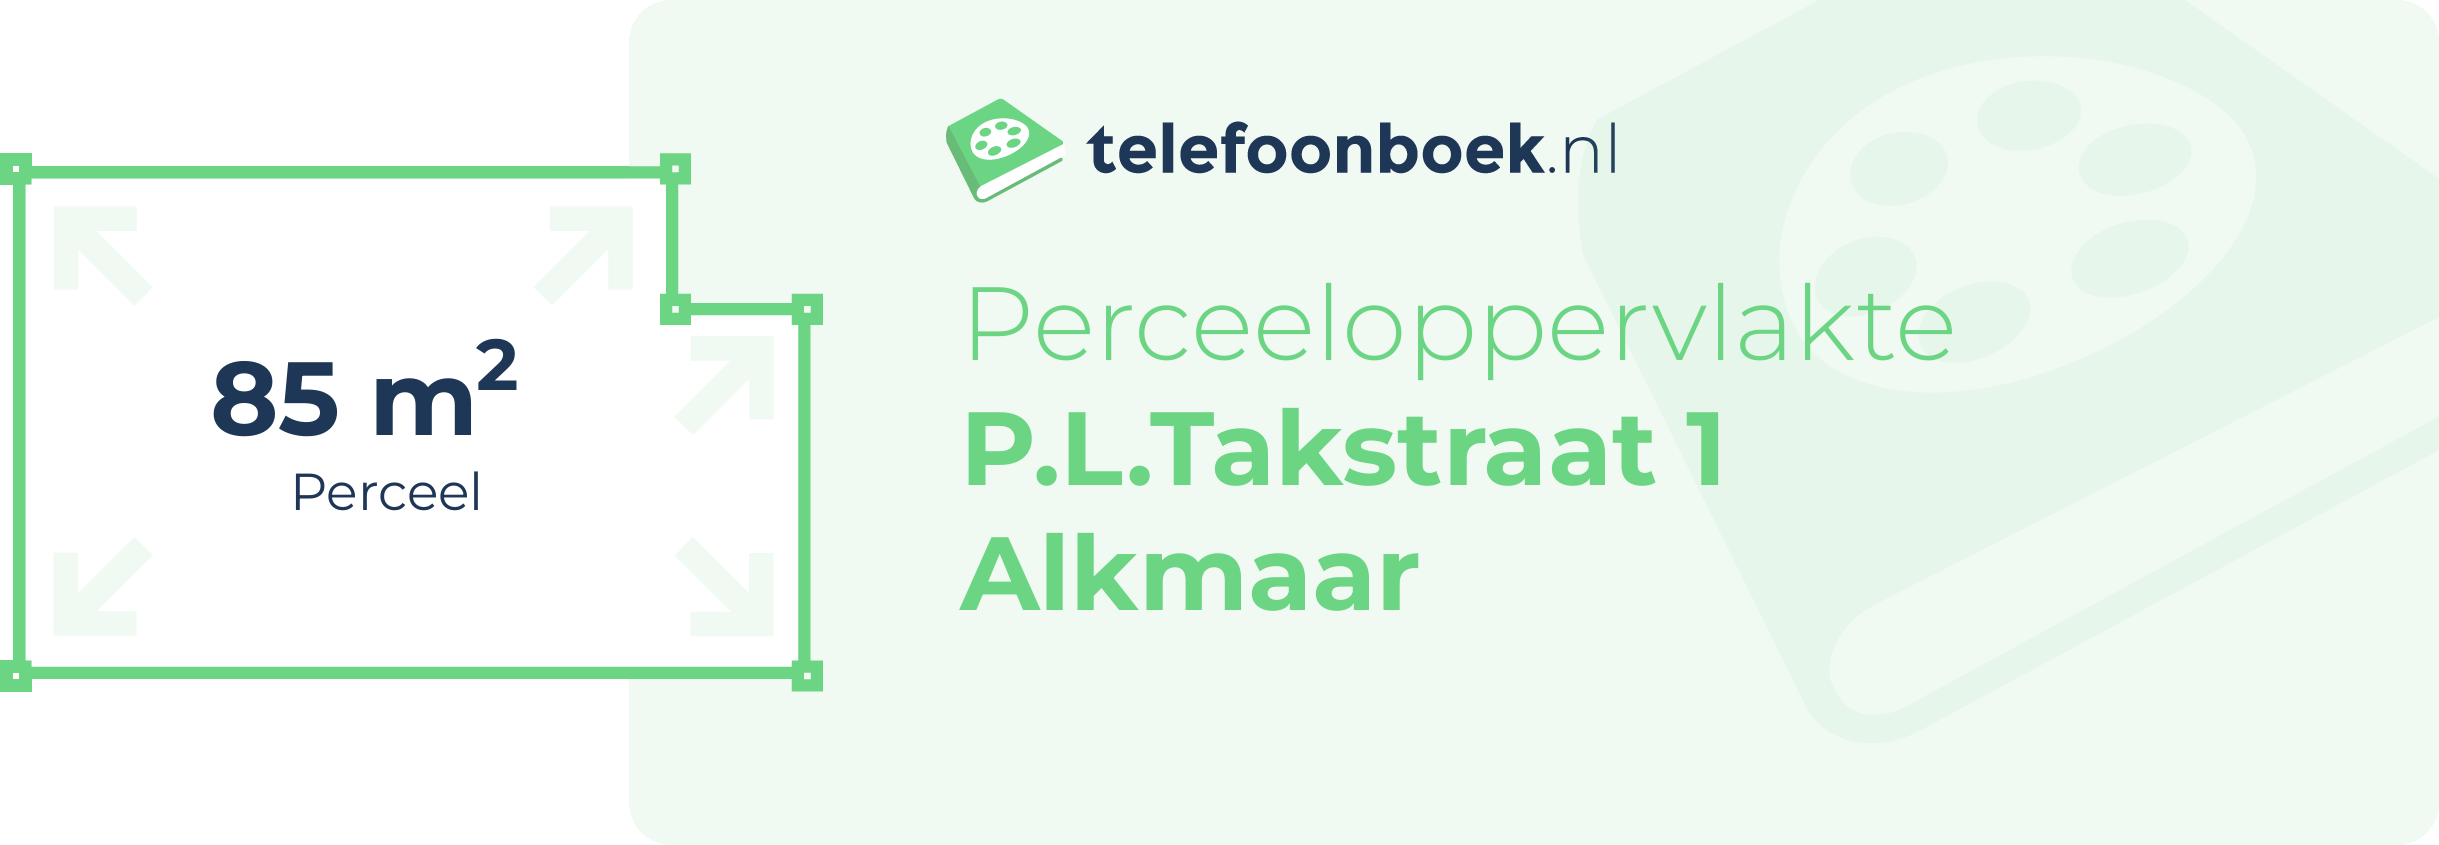 Perceeloppervlakte P.L.Takstraat 1 Alkmaar